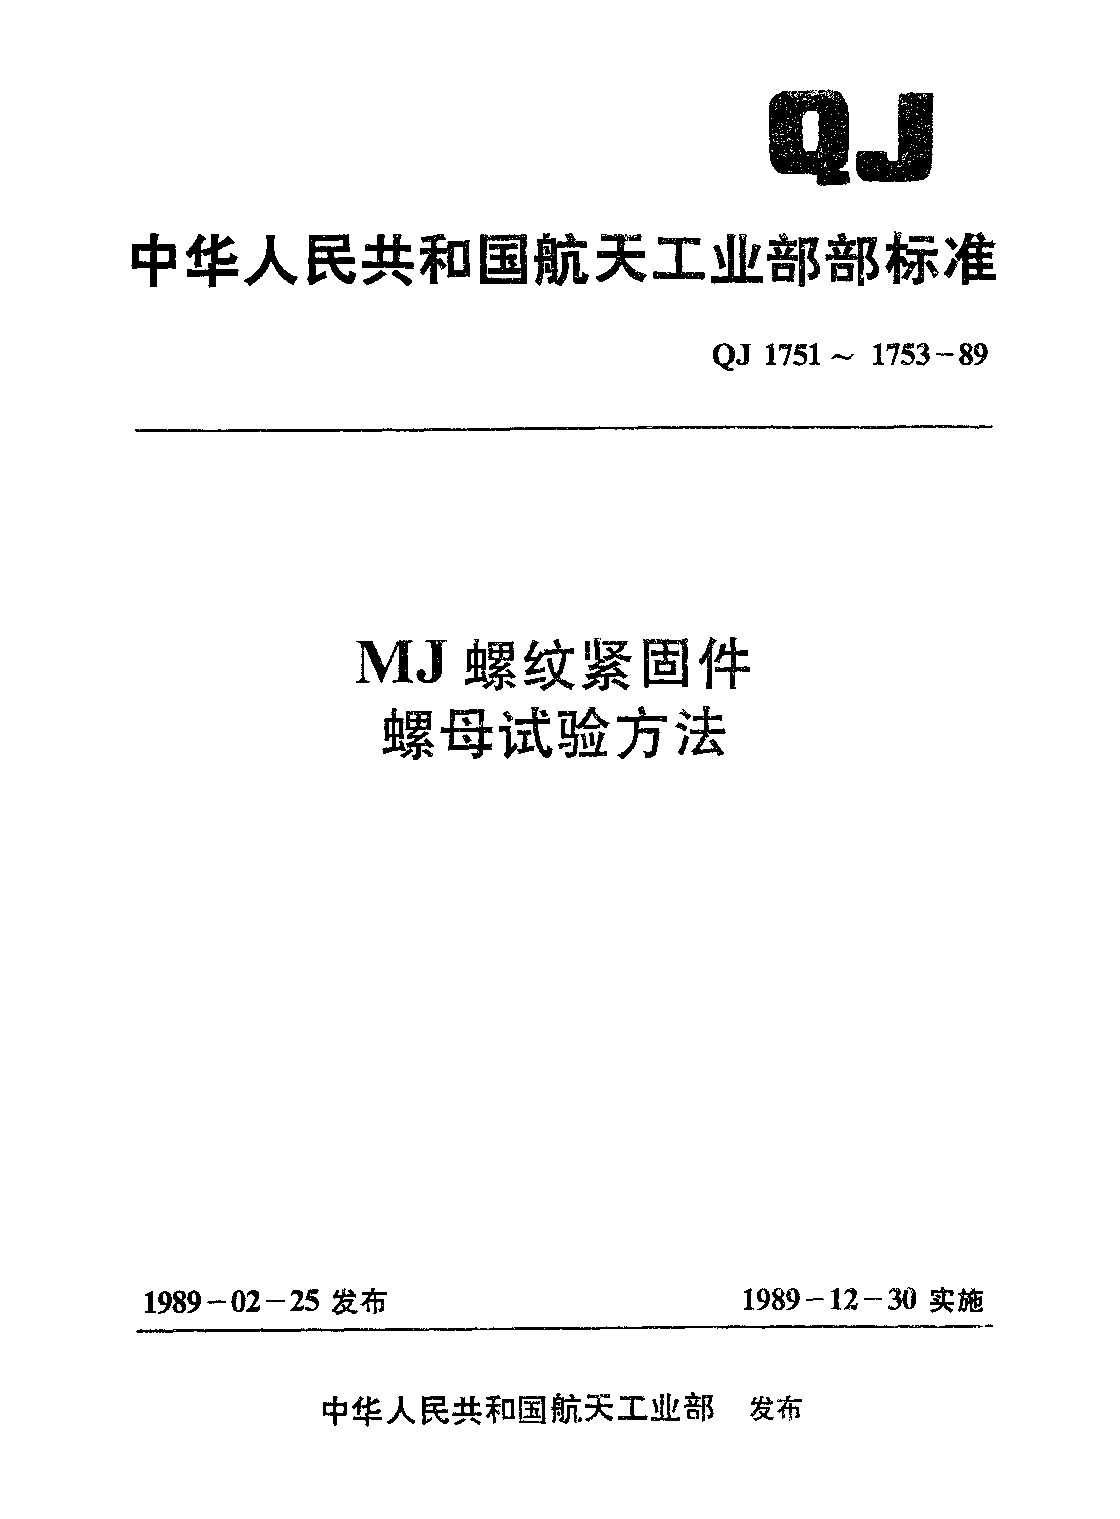 QJ 1751-1989封面图